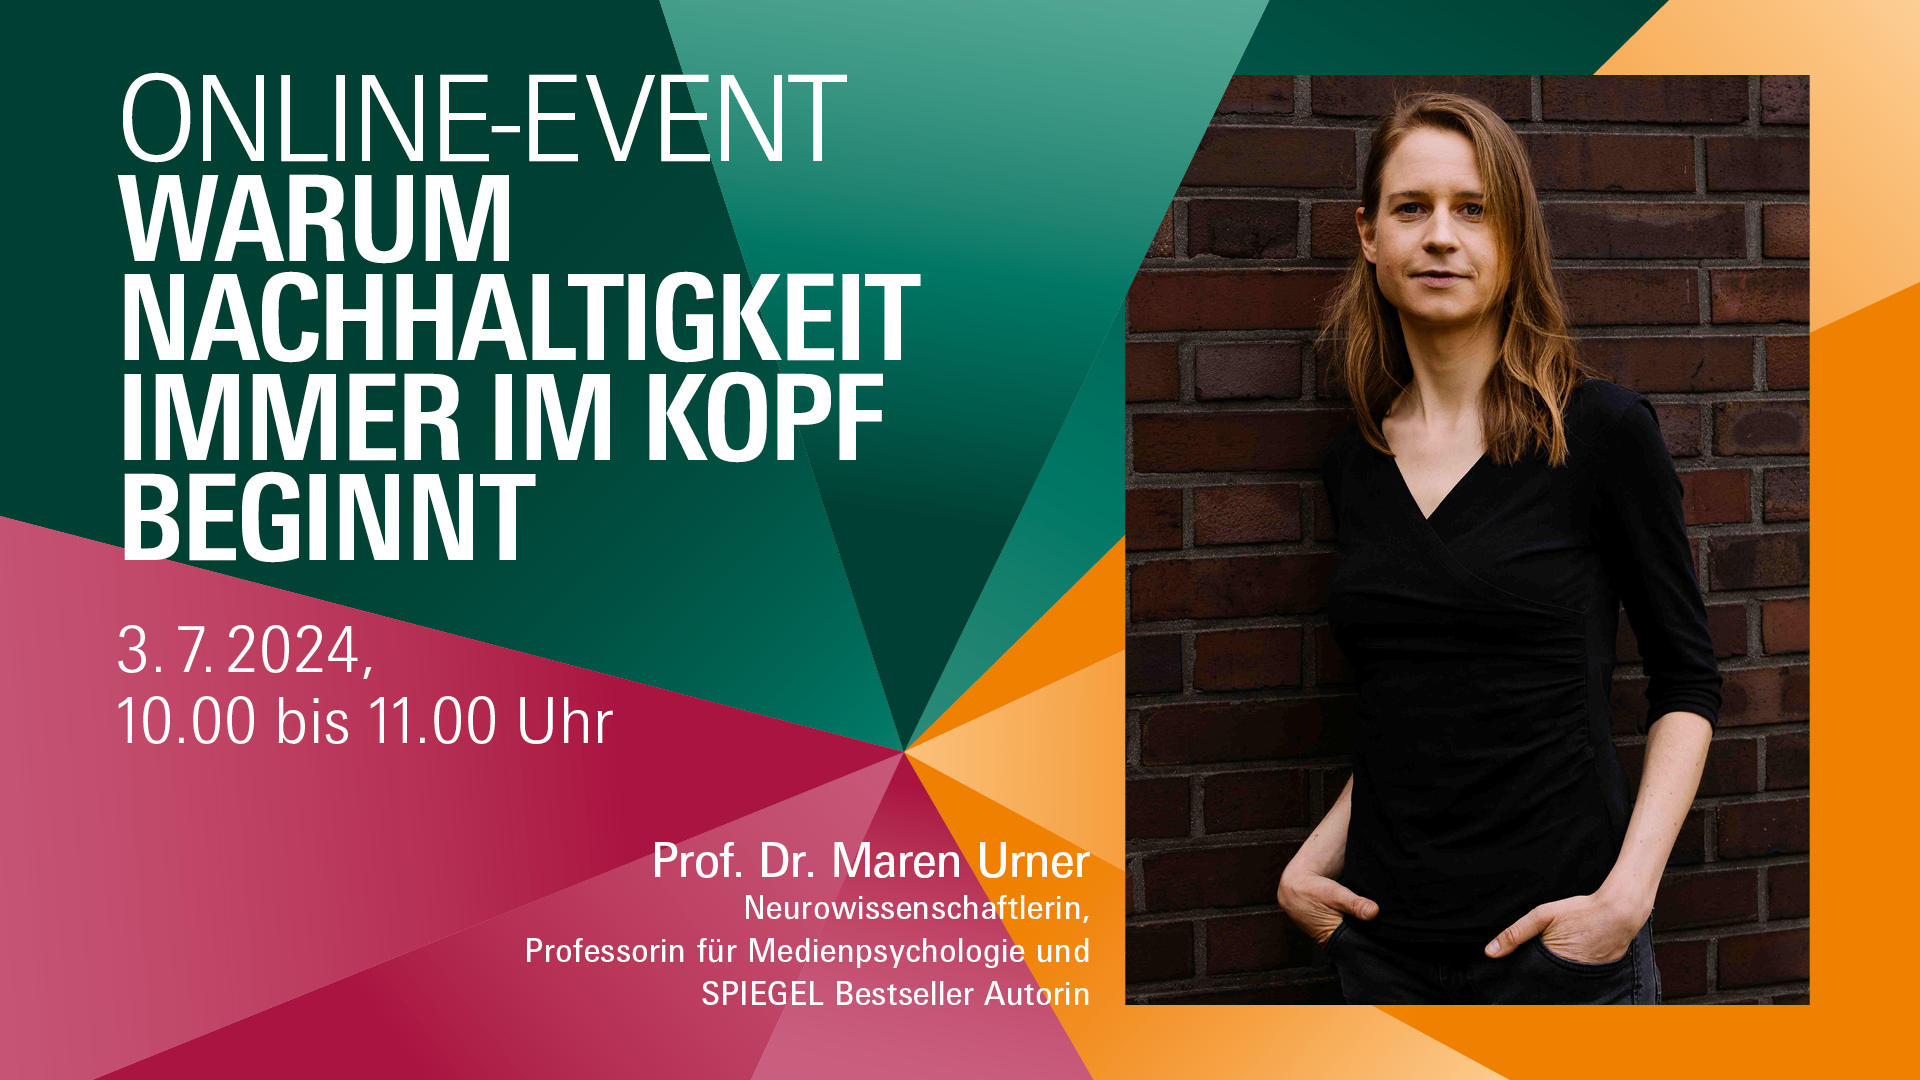 Online-Event der Digital Academy am 3. Juli 2024: Warum Nachhaltigkeit immer im Kopf beginnt - Neurowissenschaftlerin und Spiegel-Bestsellerautorin Prof. Dr. Maren Urner